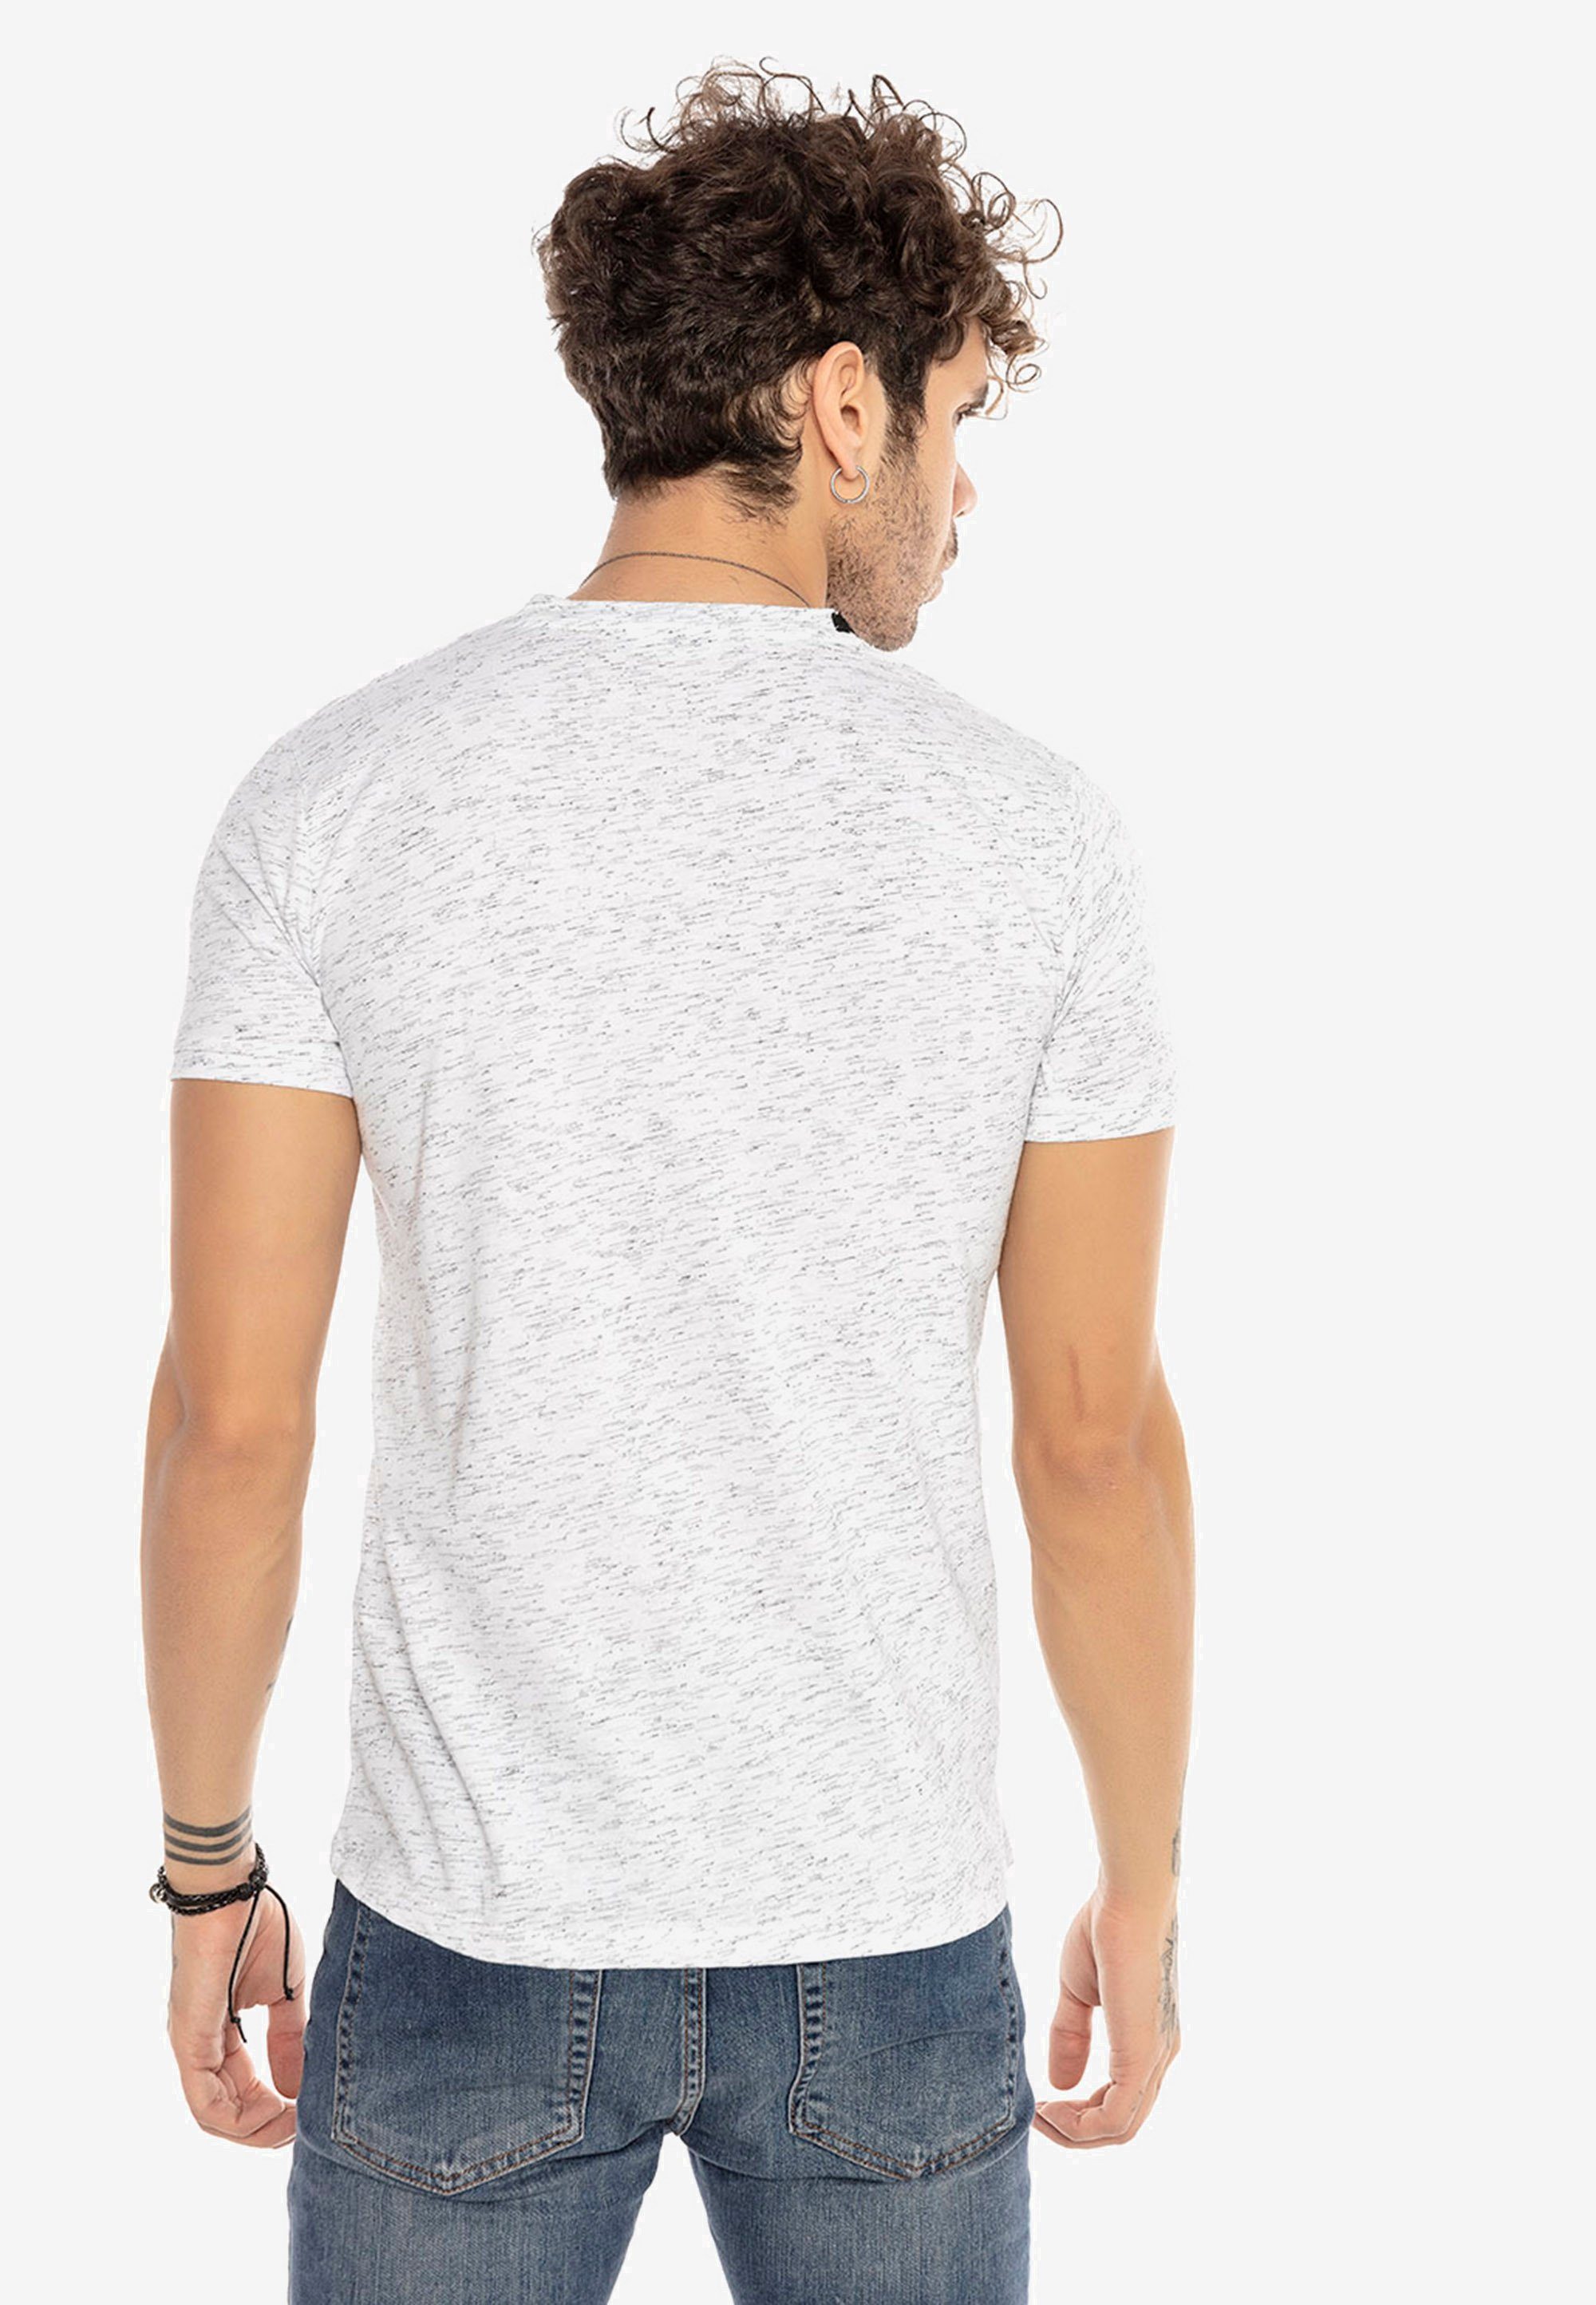 Kontrast-Saum mit Escondido RedBridge weiß T-Shirt